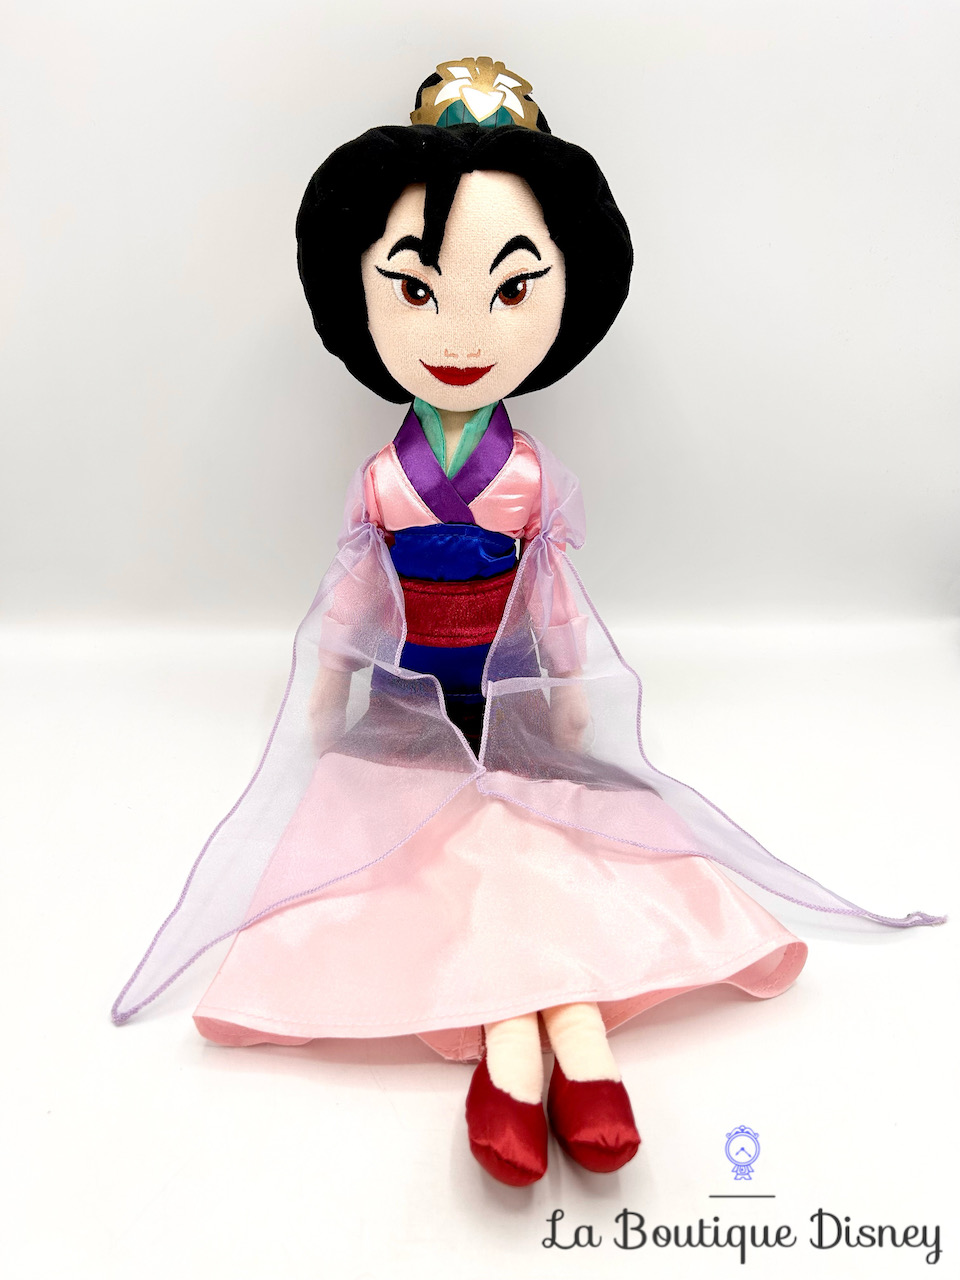 Poupée chiffon Mulan Mariage Disney Store peluche princesse chinoise 52 cm